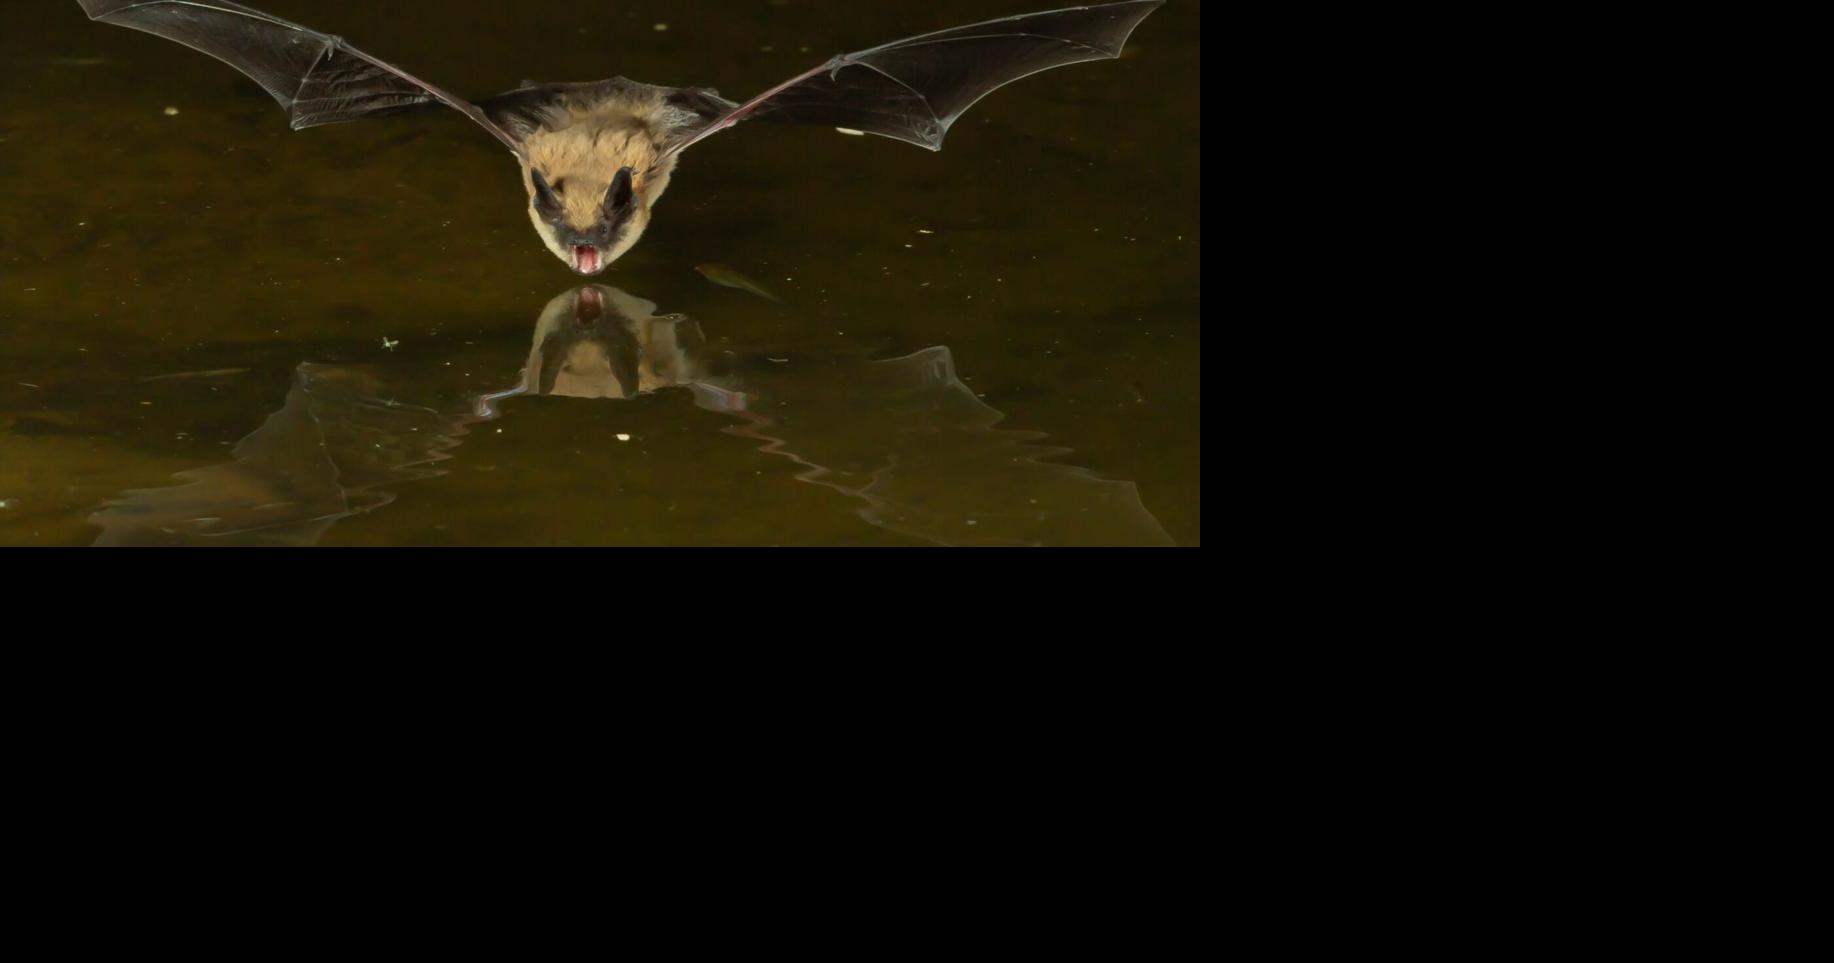 College Notes: Big bats in AZ